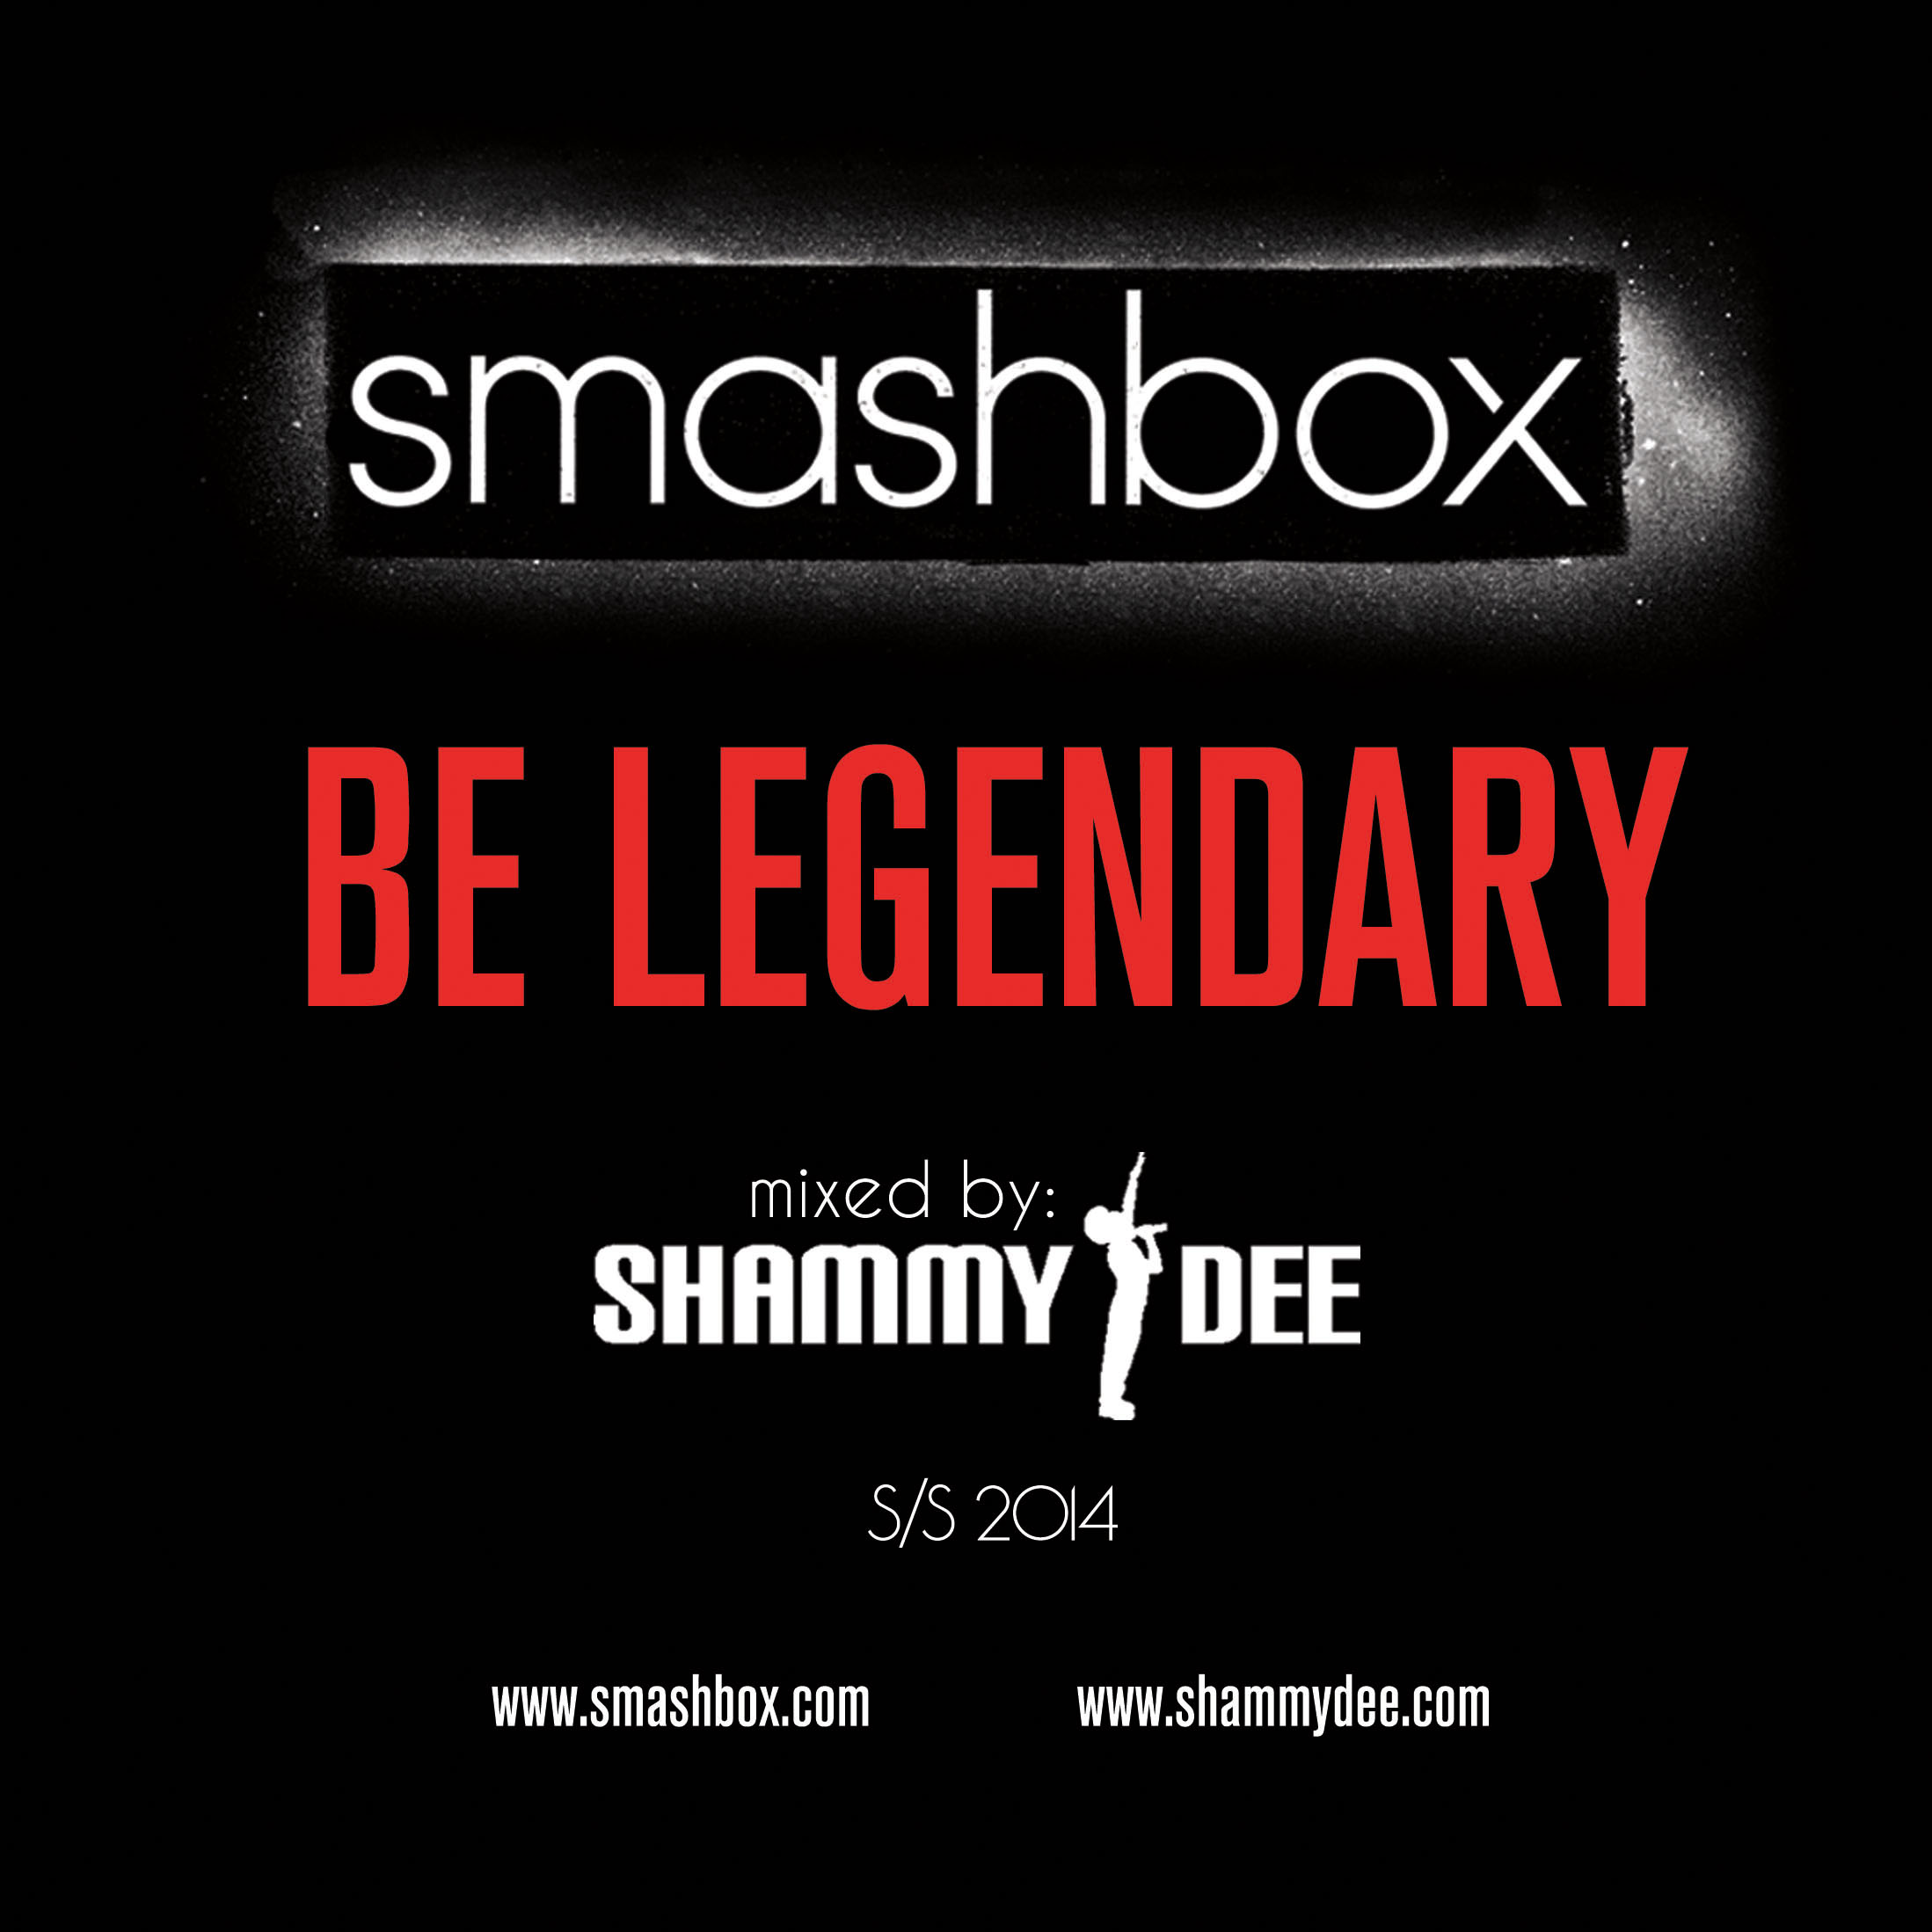 Smashbox & Shammy Dee Presents: Be Legendary Mixxtape